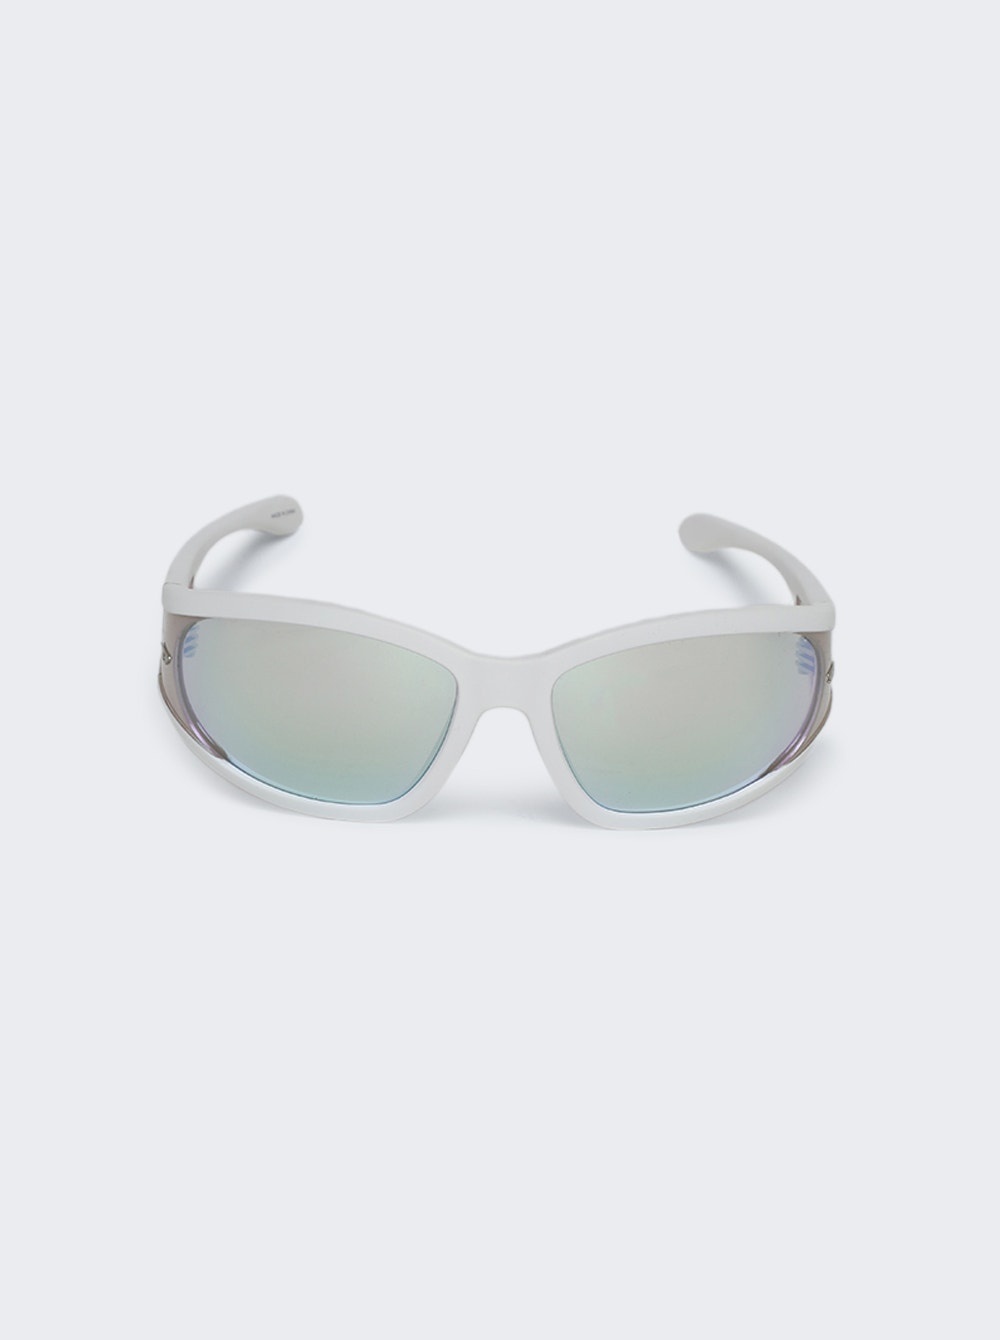 Lx3002 Sunglasses Matte White - 1